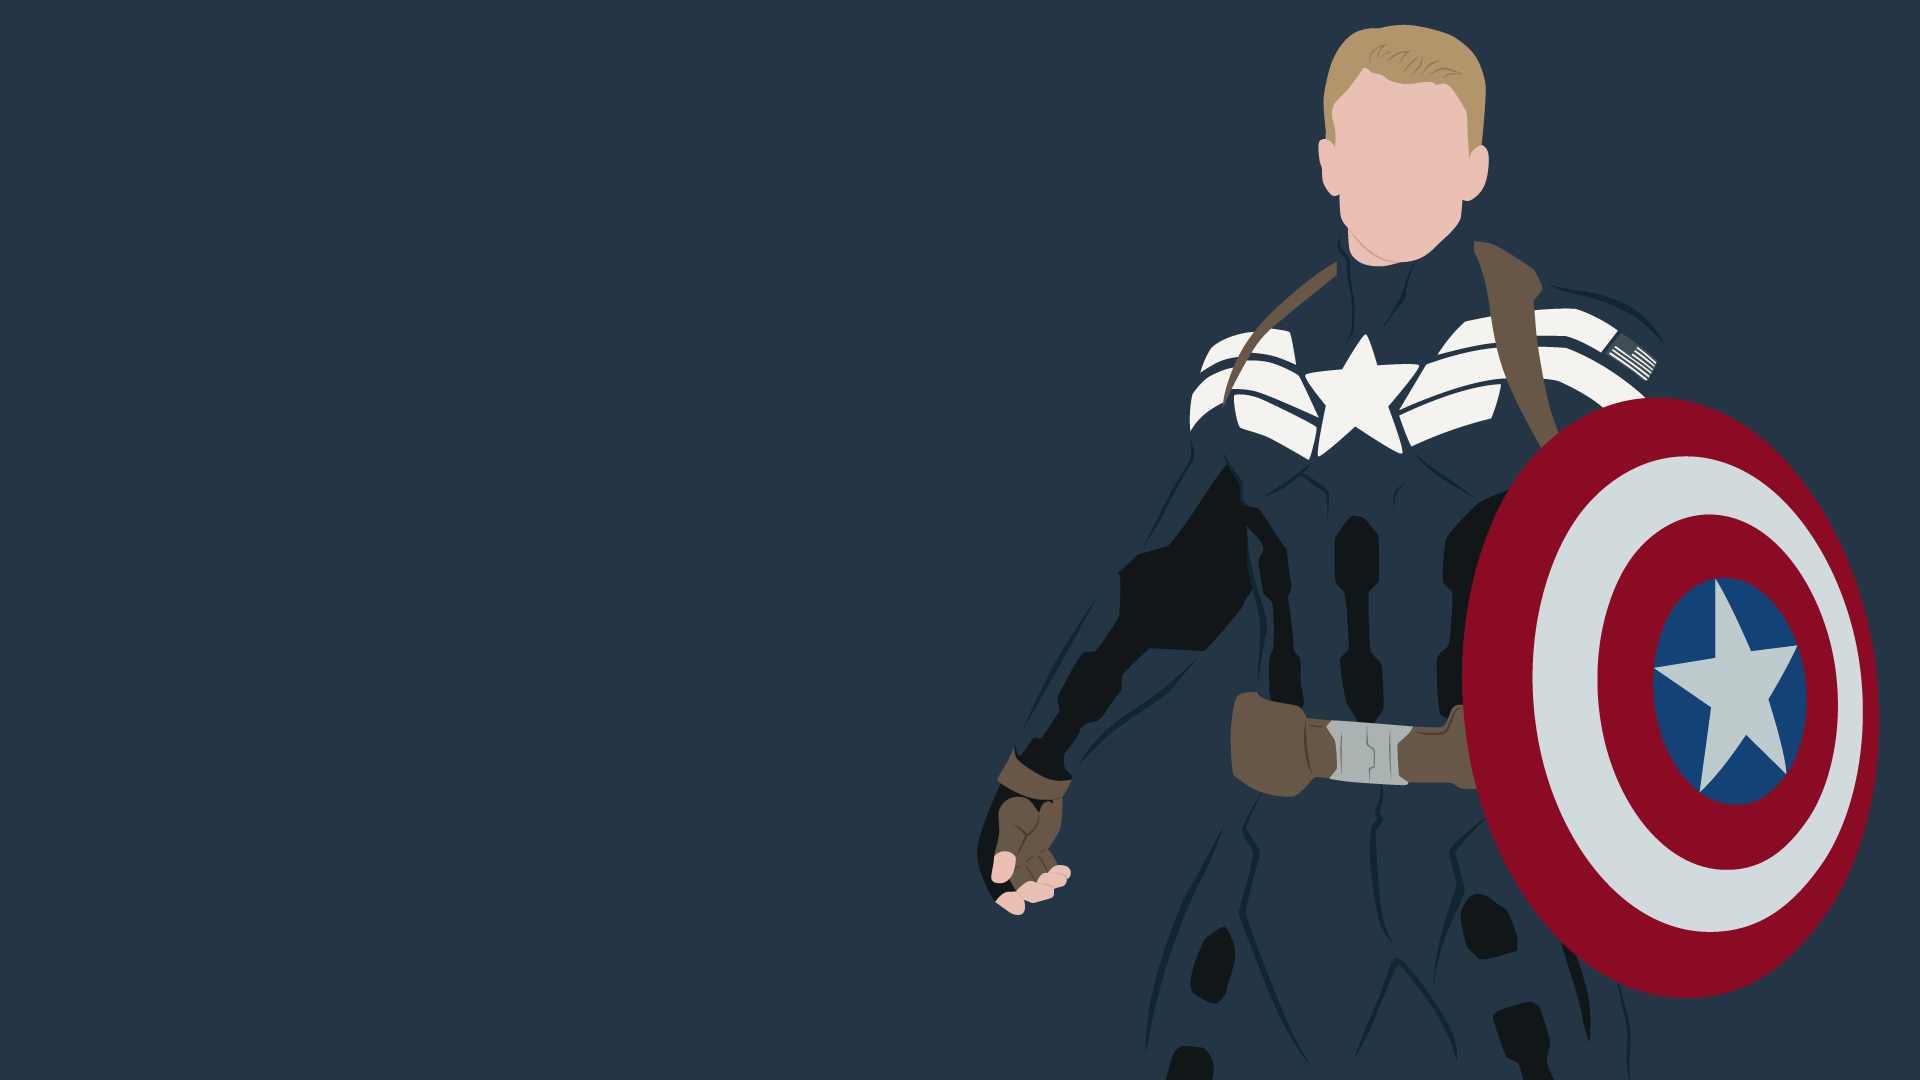 Captain America Wallpaper for Desktop. Le Fandoms ☄. Captain